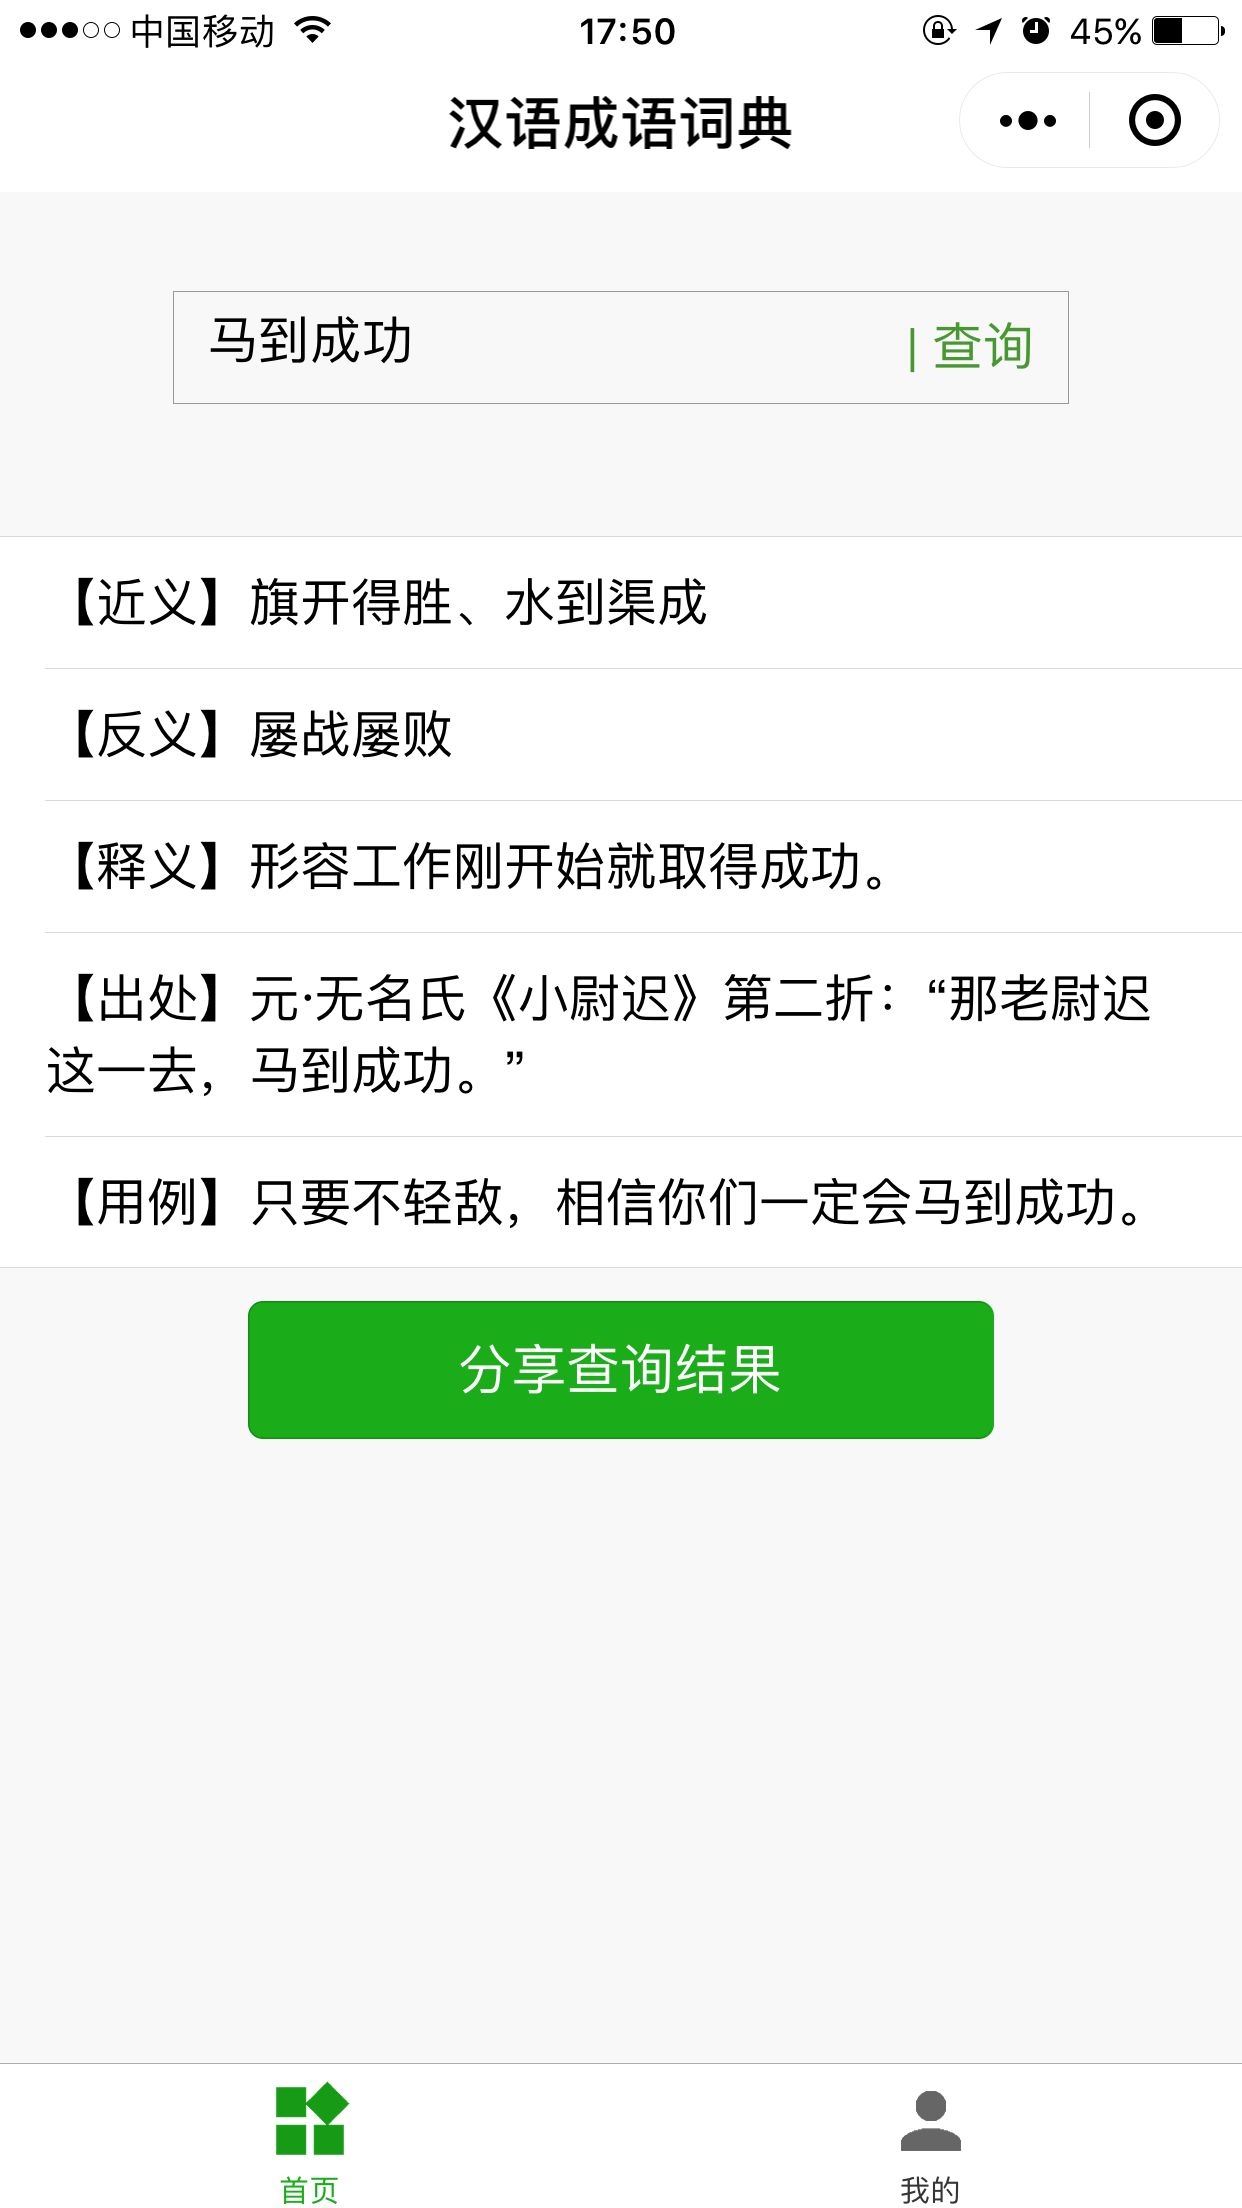 汉语成语词典_汉语成语词典小程序_汉语成语词典微信小程序